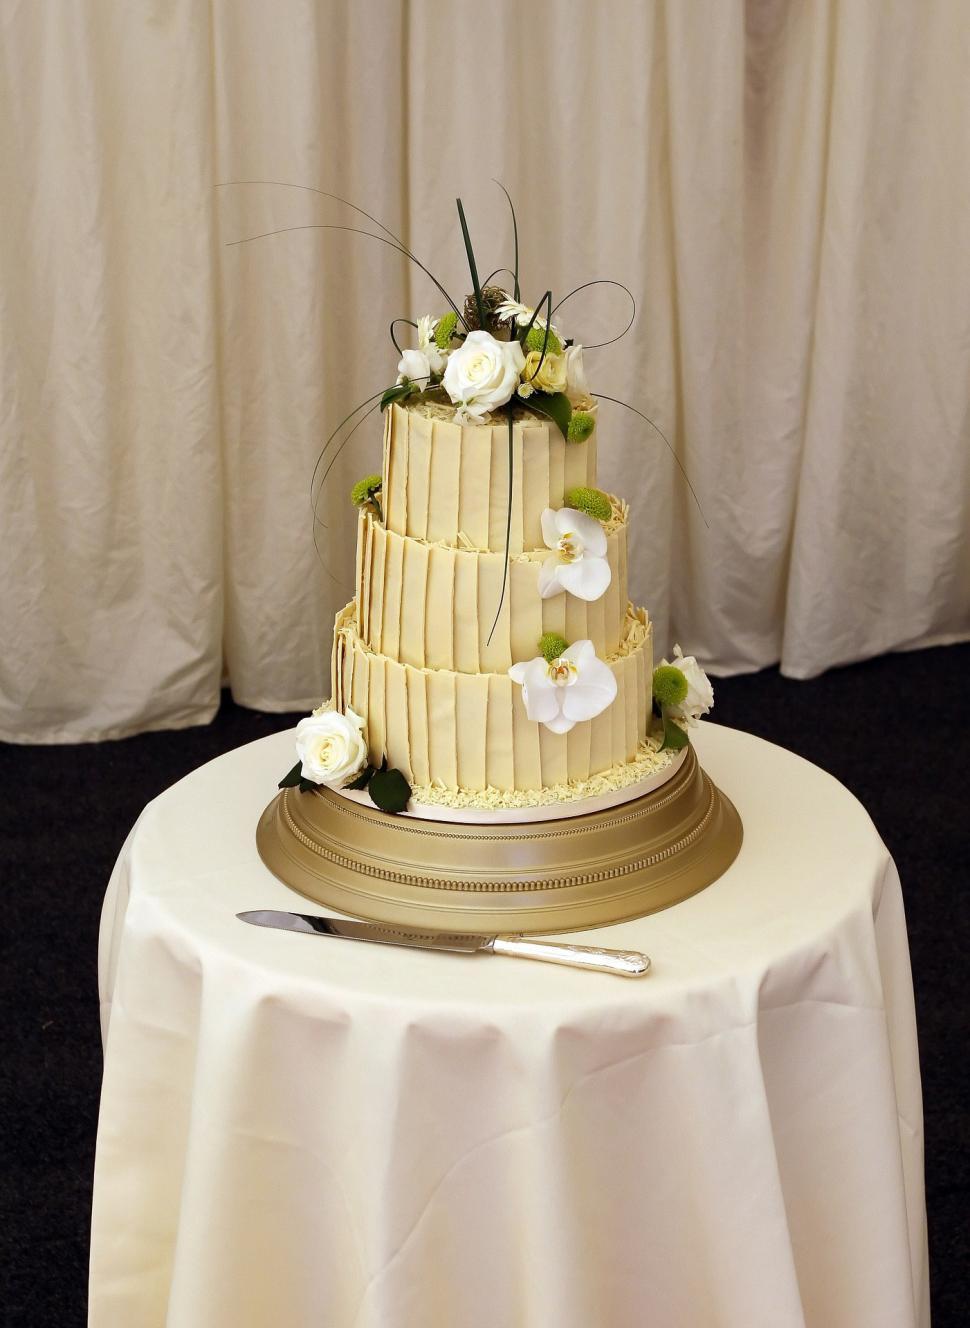 Free Image of cake wedding wedding cake fancy table drape 